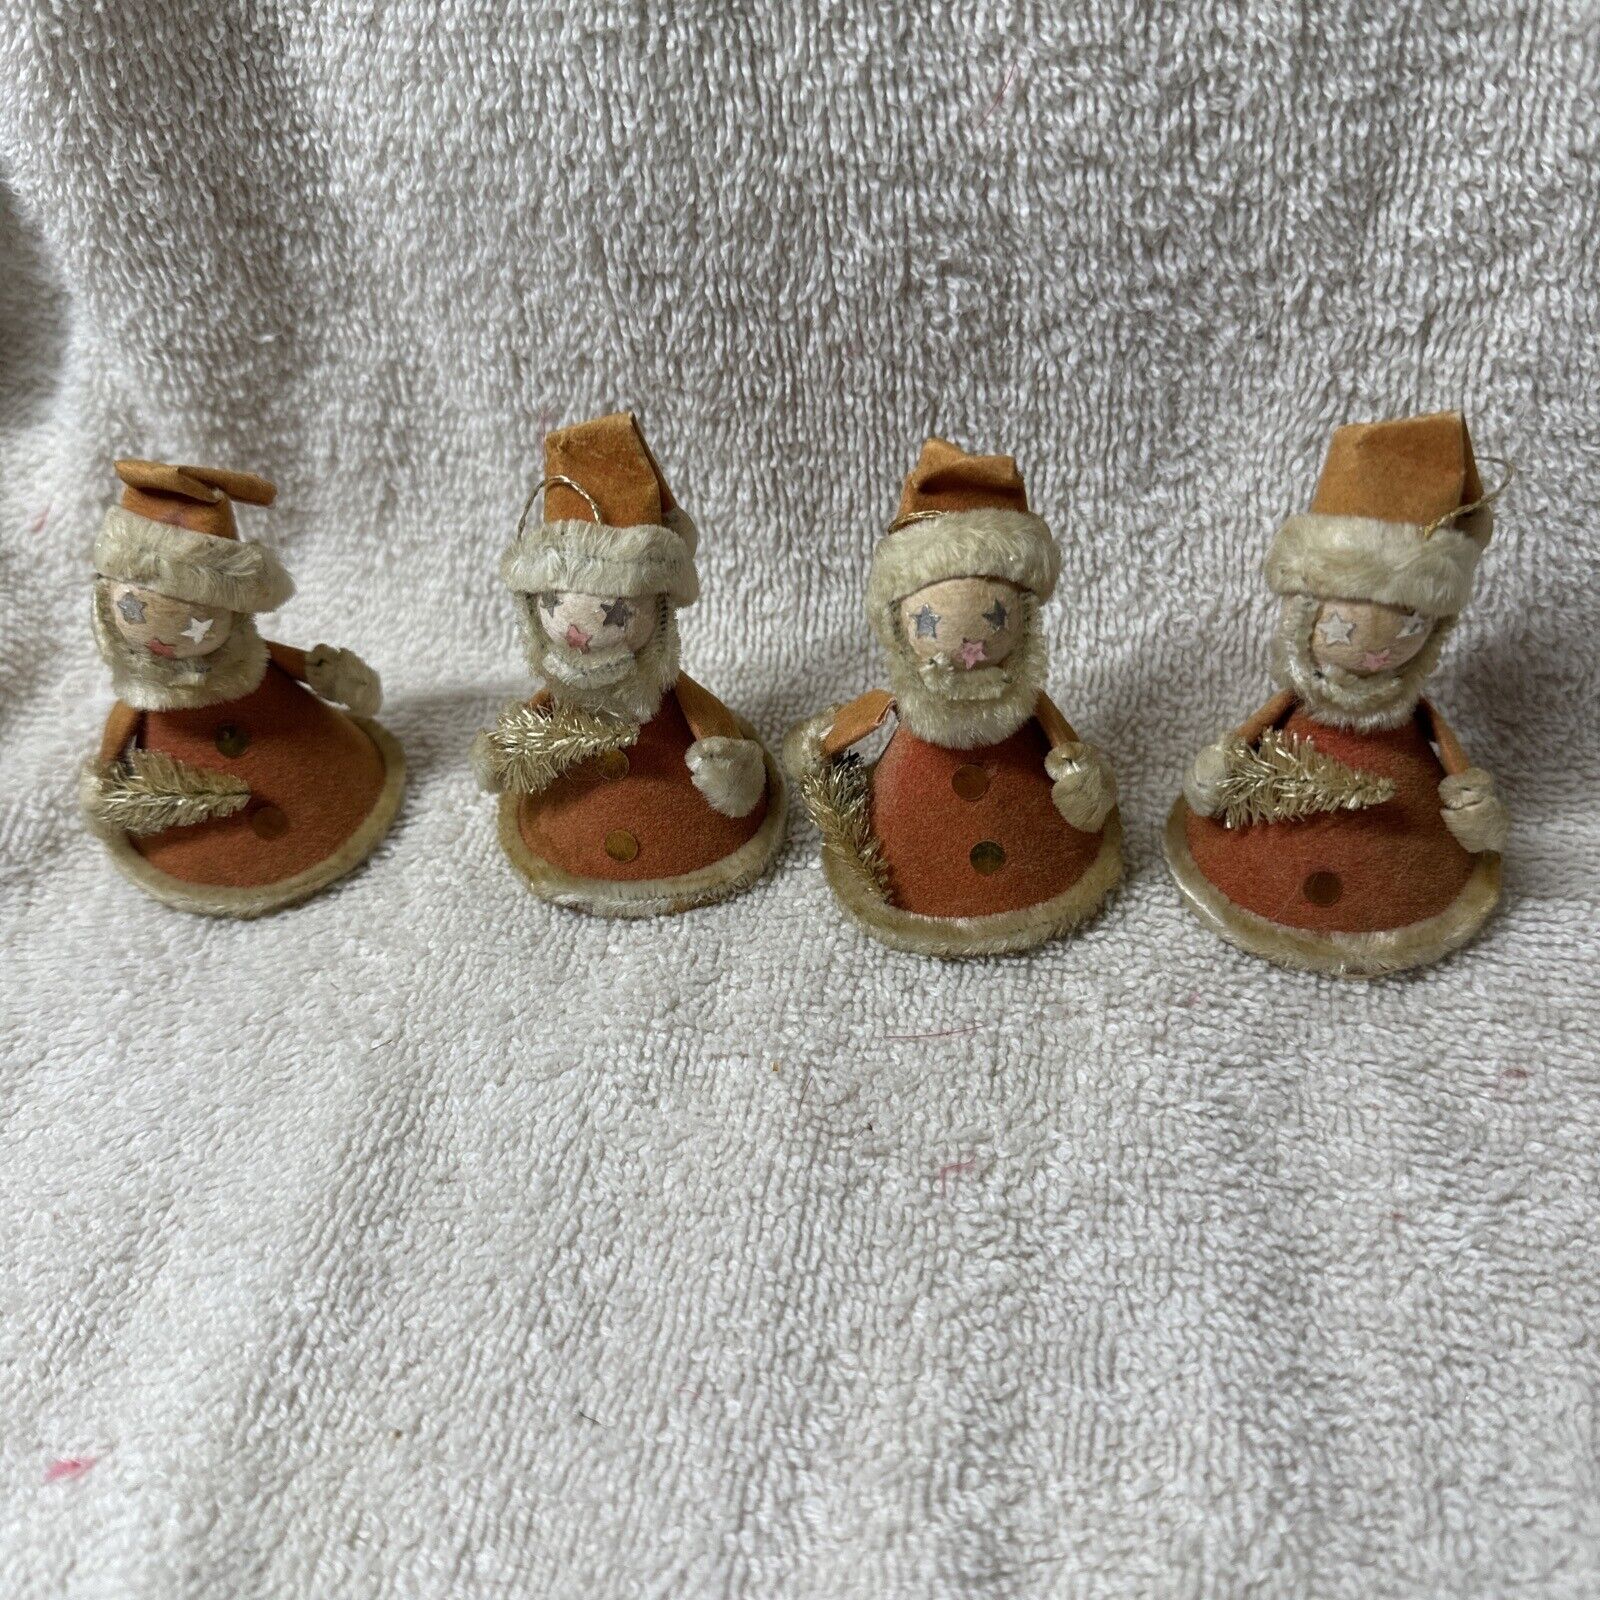 Vintage Spun Cotton/Felt Pixie Christmas Ornaments Lot 4 Japan D57